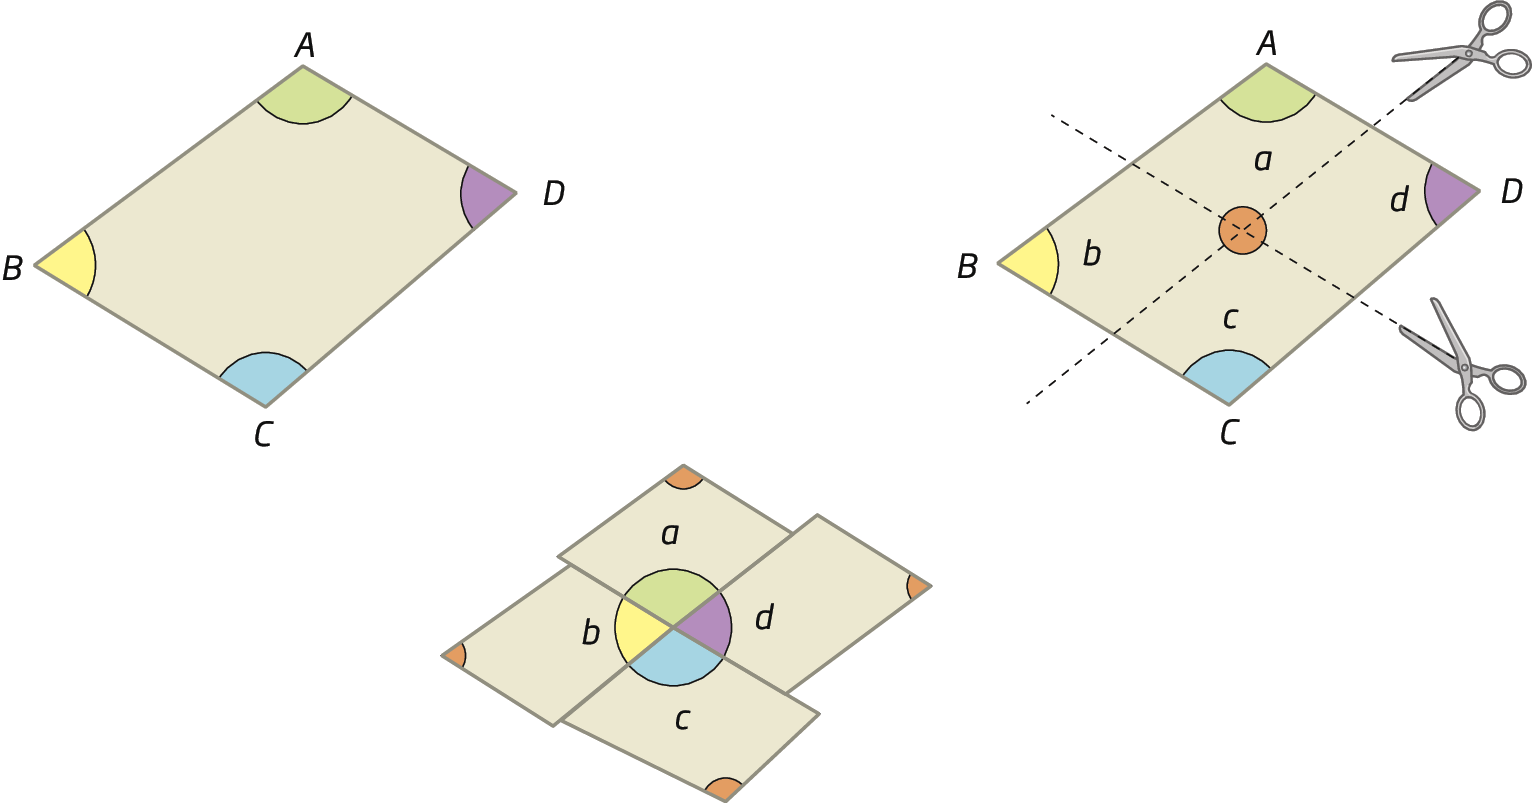 Ilustração. Mesmo quadrilátero ABCD em 3 situações diferentes. Na primeira, quadrilátero ABCD com 4 ângulos demarcados, cada um de uma cor: ângulo em A verde; ângulo em B amarelo; ângulo em C azul; ângulo em D roxo. Na segunda, quadrilátero ABCD com os mesmos ângulos coloridos, agora identificados como a (verde), b (amarelo), c (azul) e d (roxo) e tesouras demonstrando dois cortes no quadrilátero: um na horizontal e outro na vertical. Na região onde os cortes se encontram, há uma circunferência demonstrando os ângulos formados pelos cortes. Os cortes dividiram o quadrilátero ABCD em quatro outros menores. Na terceira situação, os quadriláteros menores recortados foram reorganizados, de modo que os ângulos a, b, c e d formassem uma circunferência.